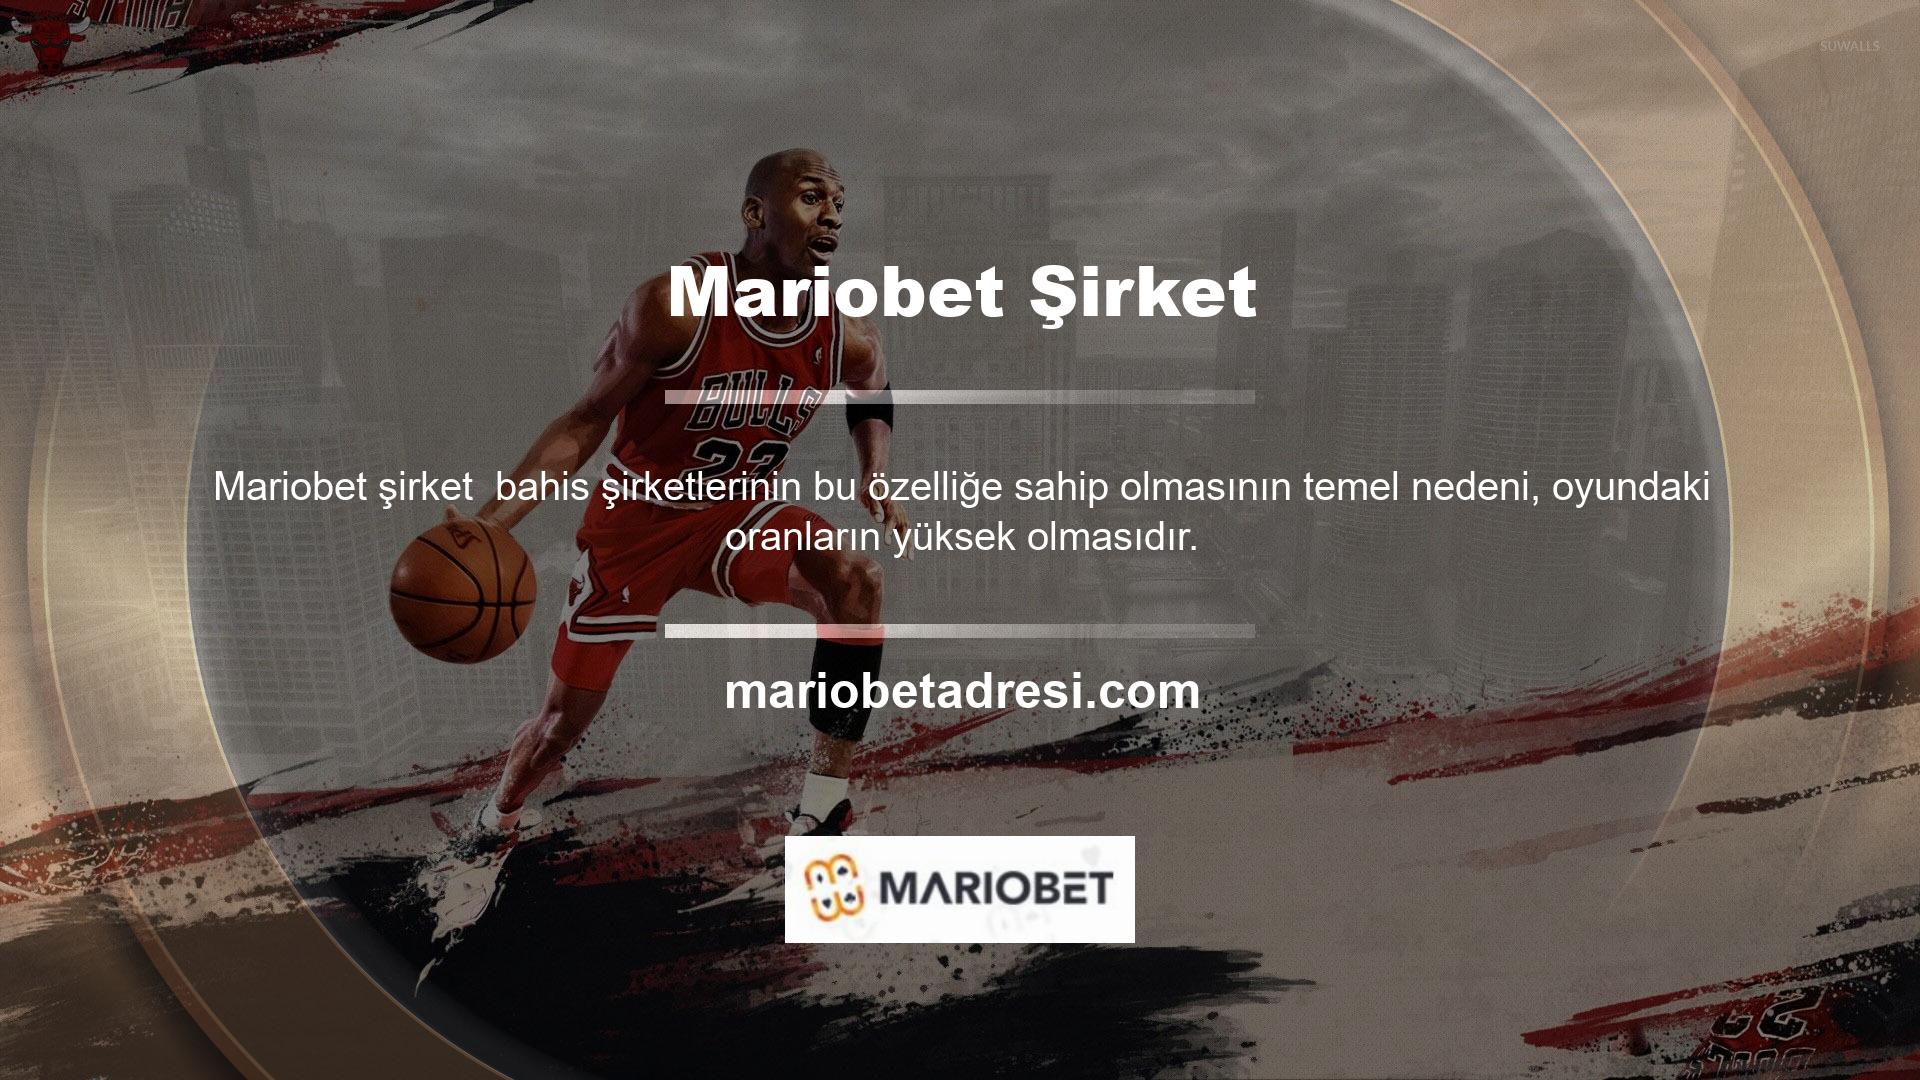 Mariobet yeni bağlantısı Mariobet giriş adresi tüm bahis tutkunları için Twitter, Facebook, Instagram ve Pinterest gibi sosyal medya platformlarında yayınlanmaktadır